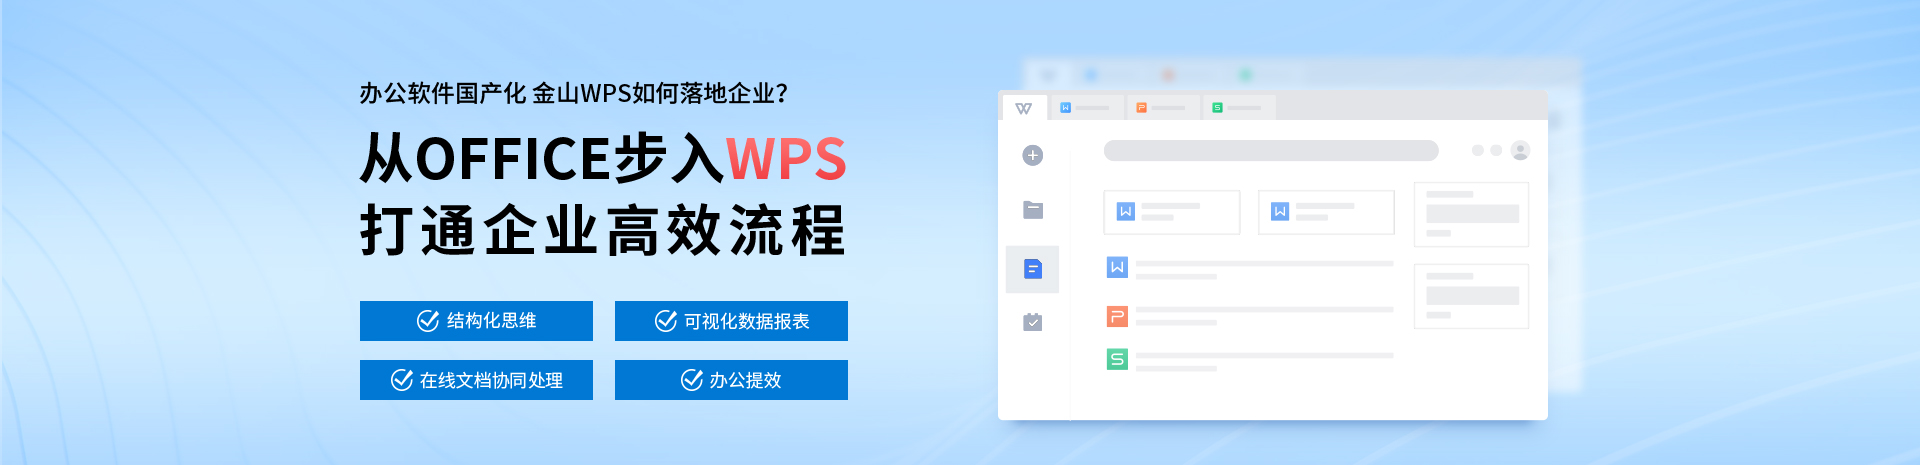 北京办公软件-PPT培训